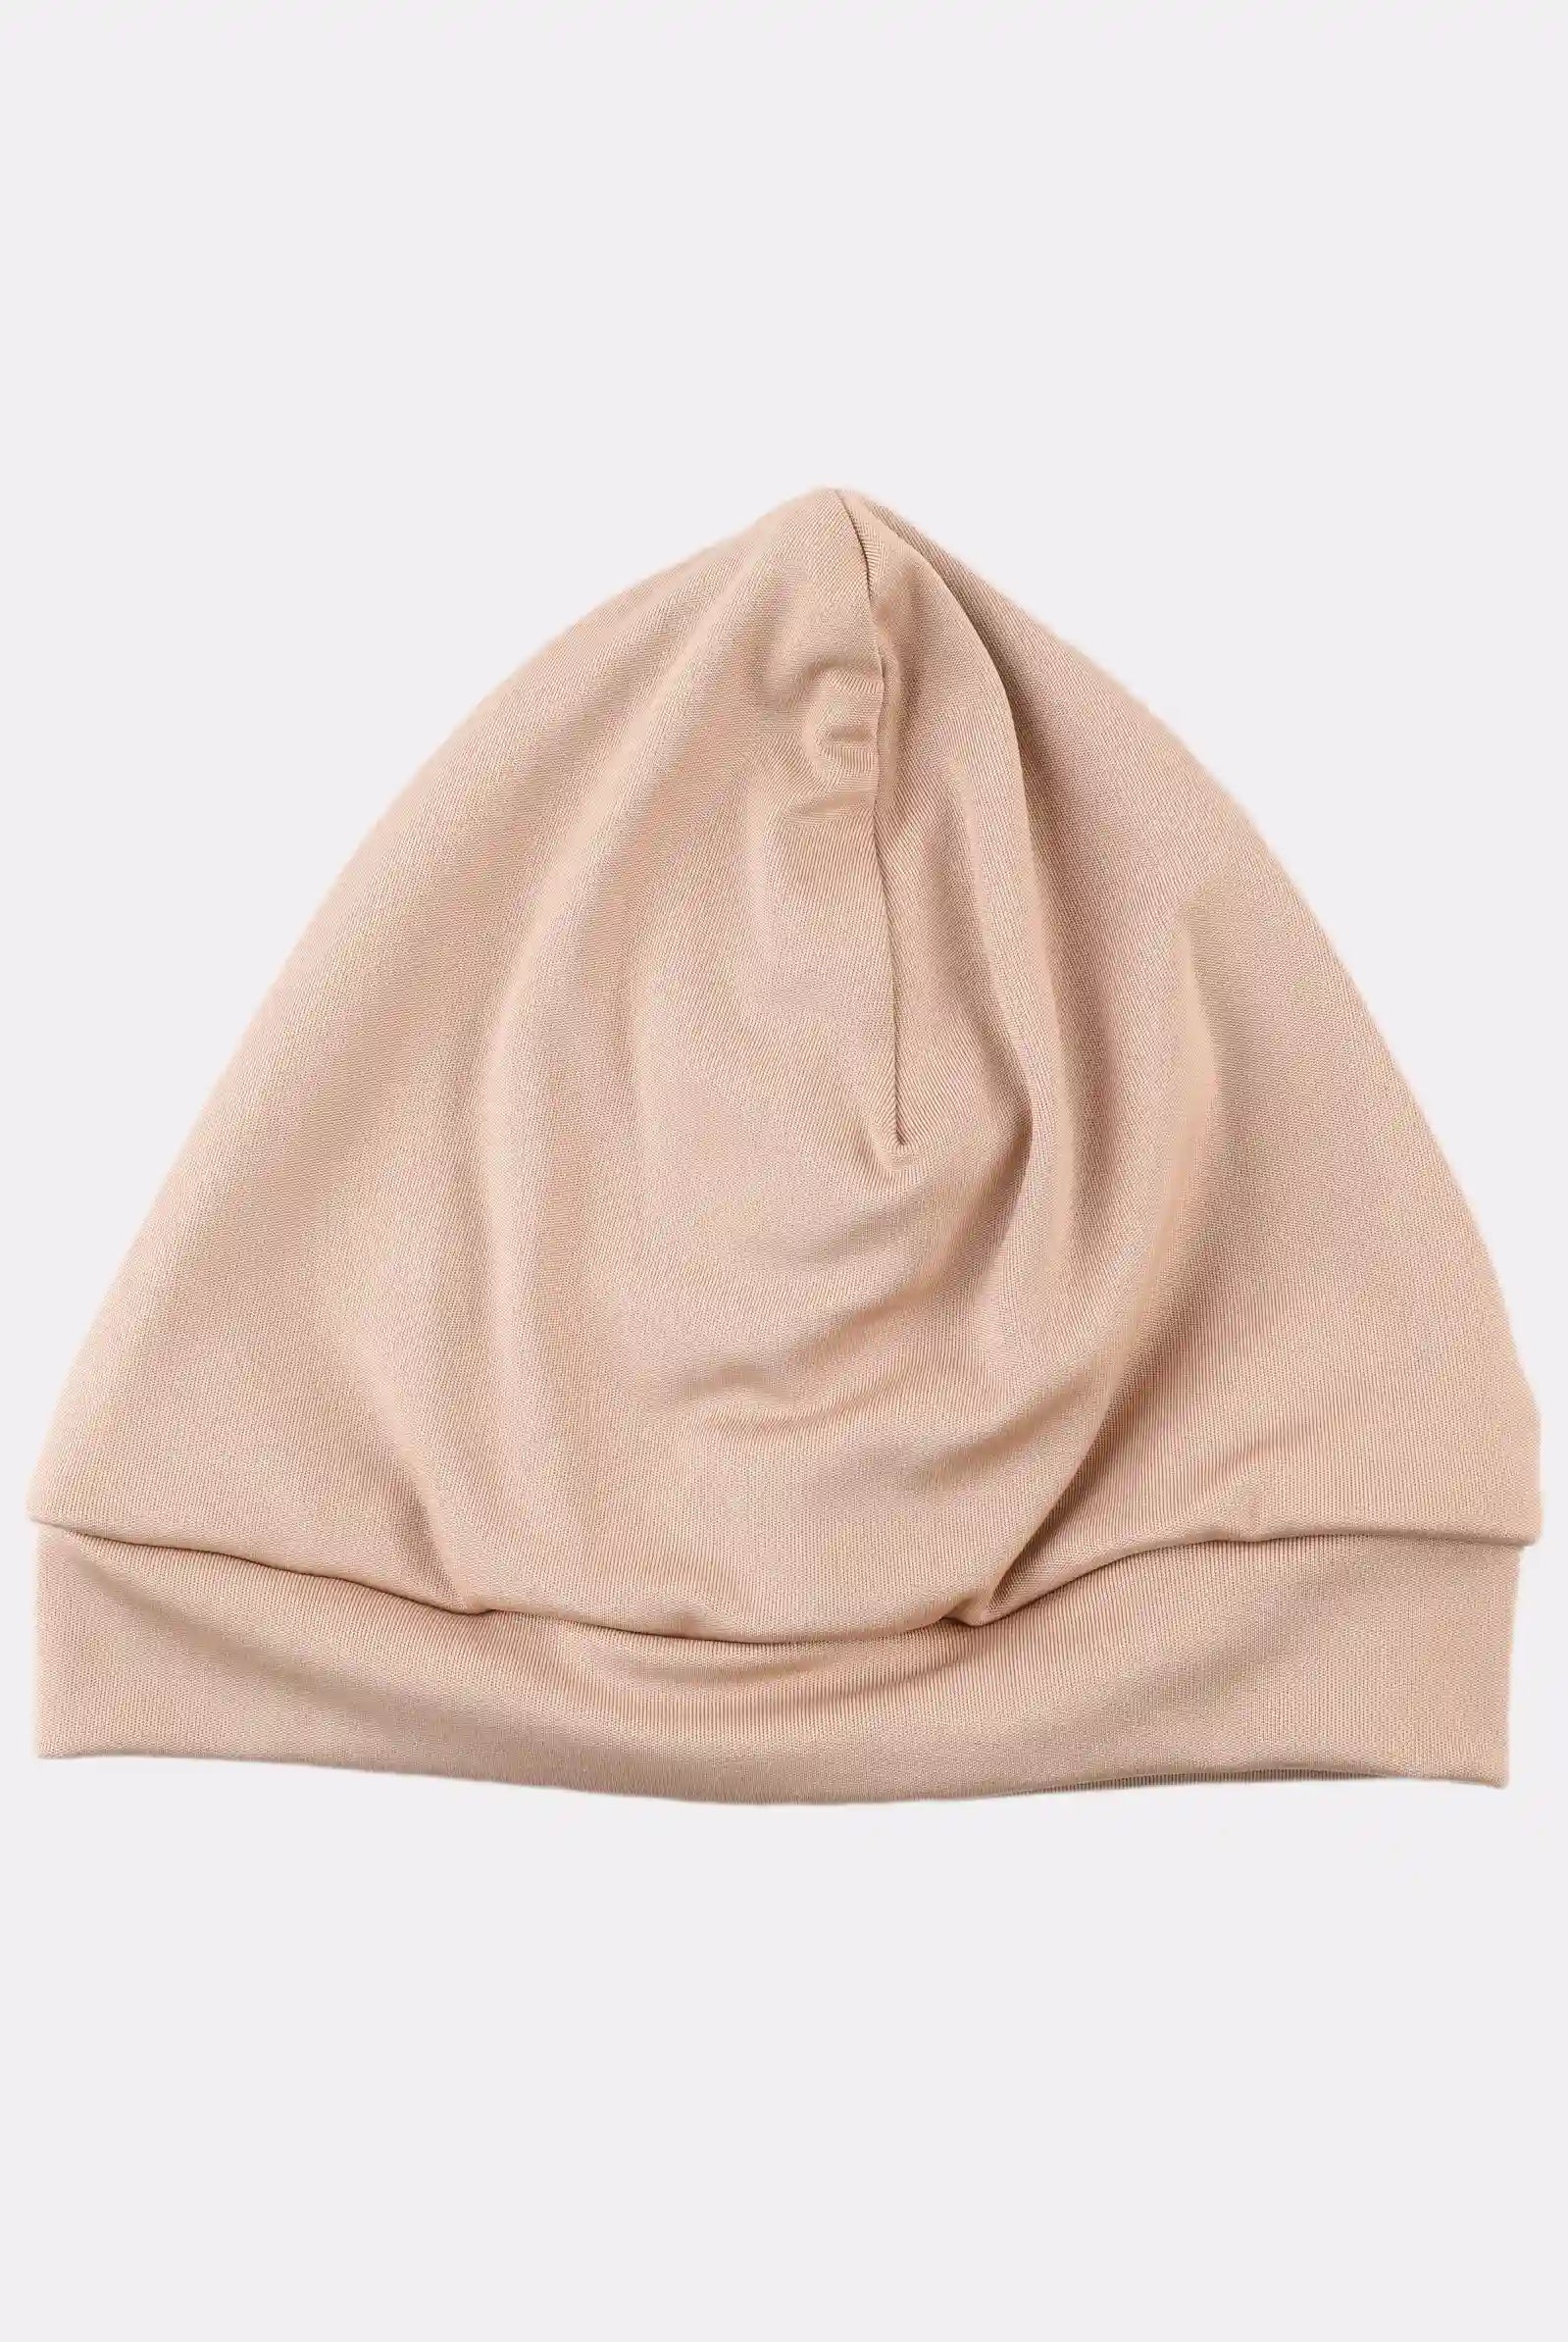 beige turban swim cap for women